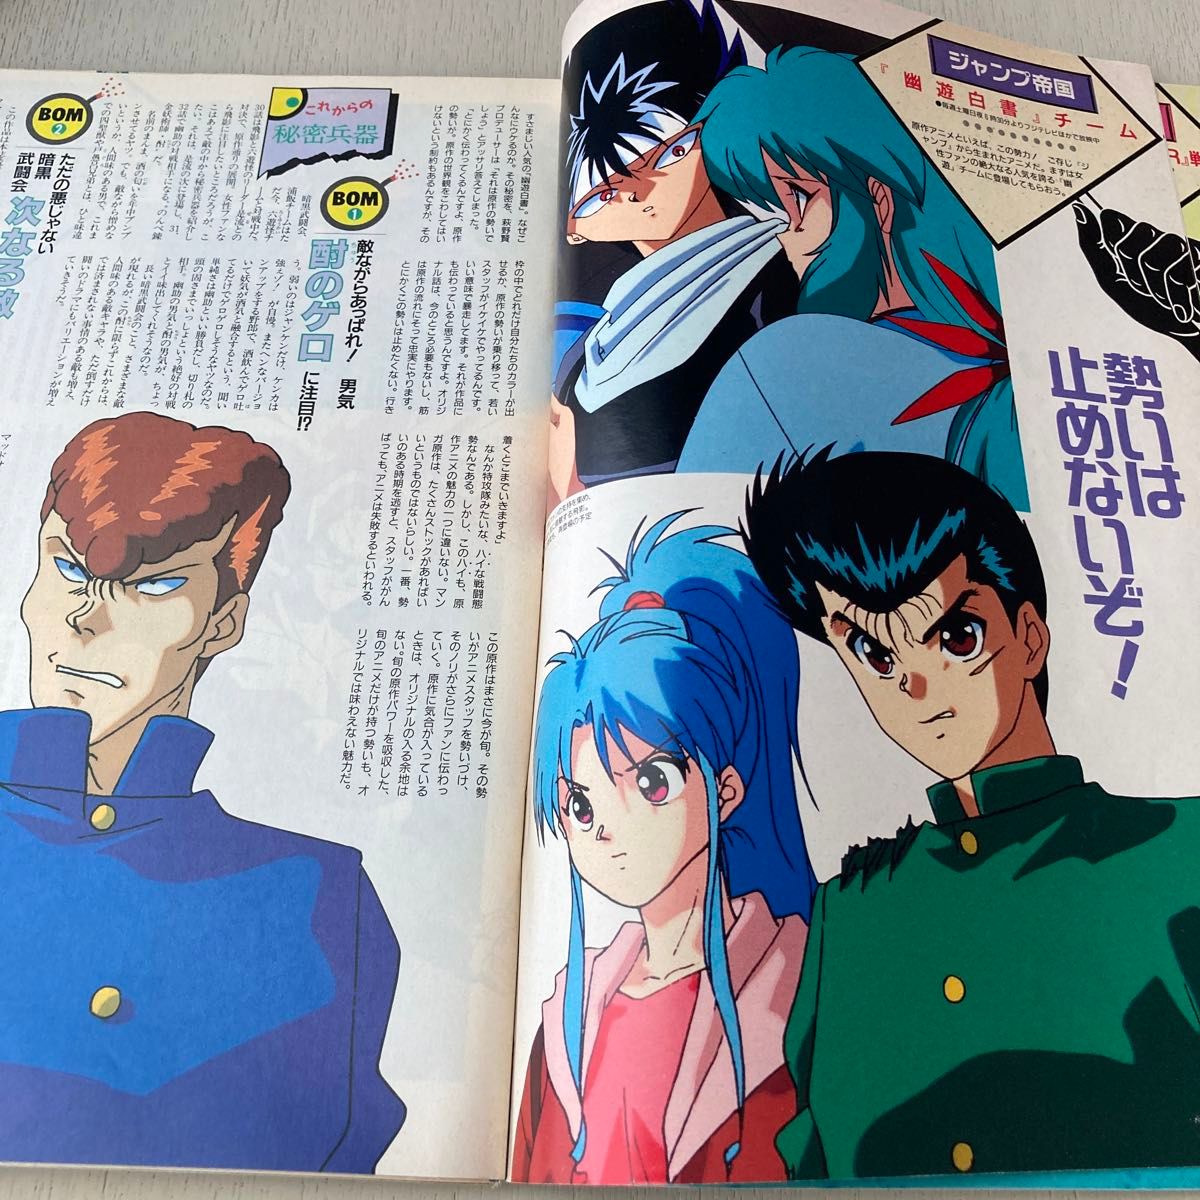 アニメディア　1993年6月号 とじこみ付録　プリンス&プリンセスシール付き